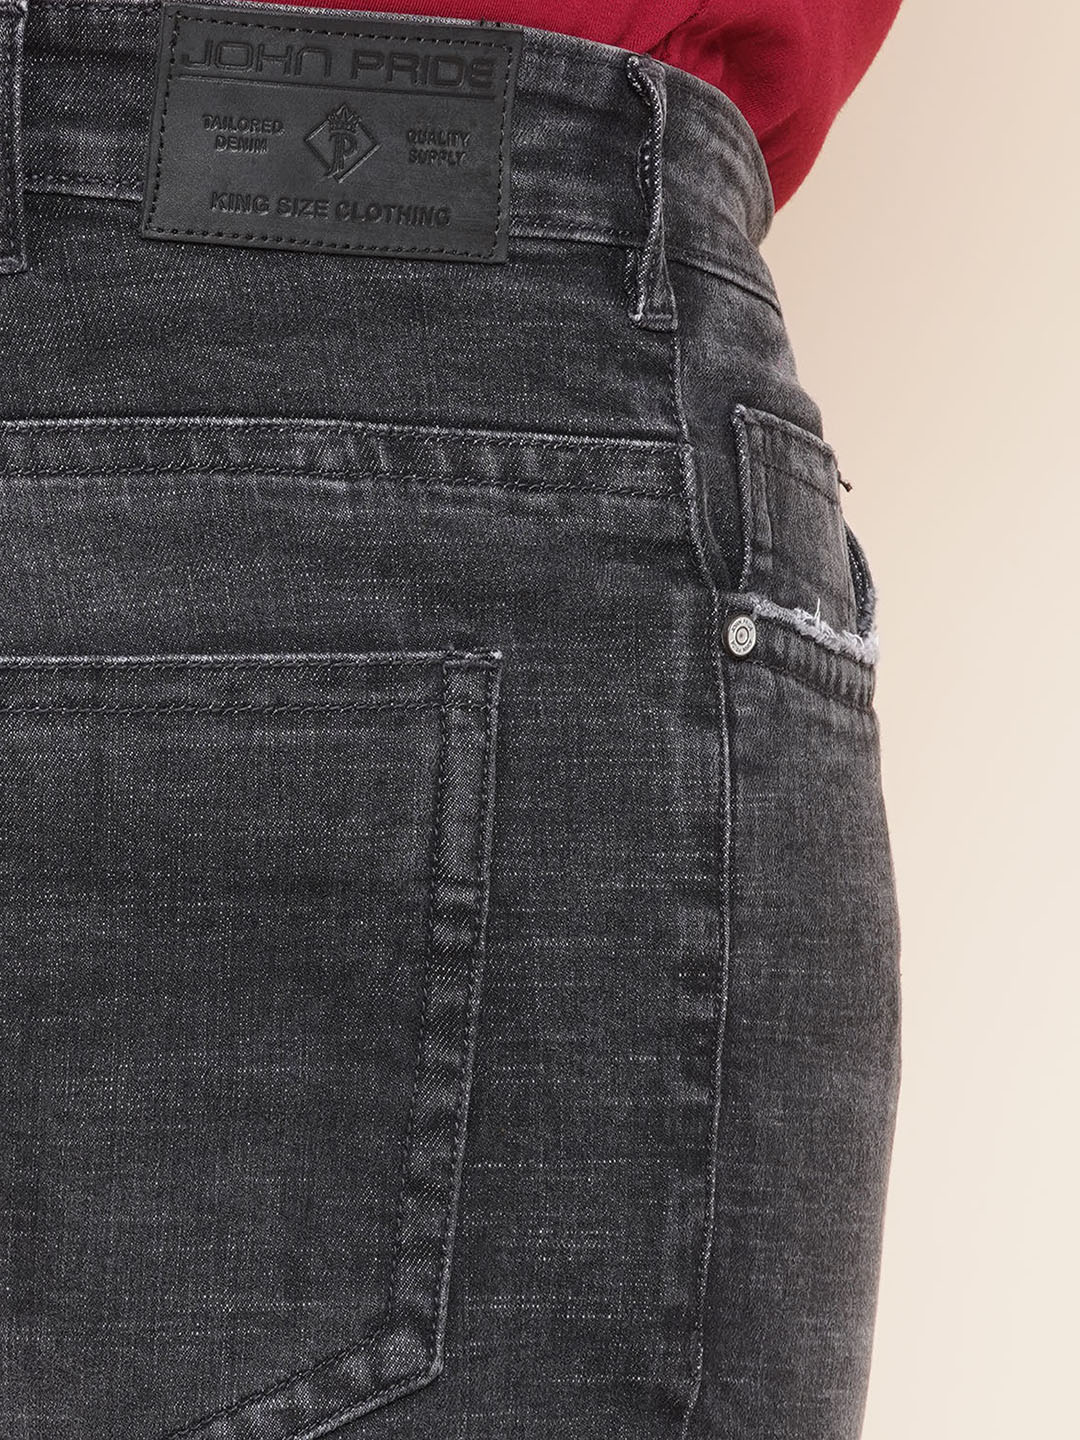 bottomwear/jeans/JPJ12295/jpj12295-2.jpg